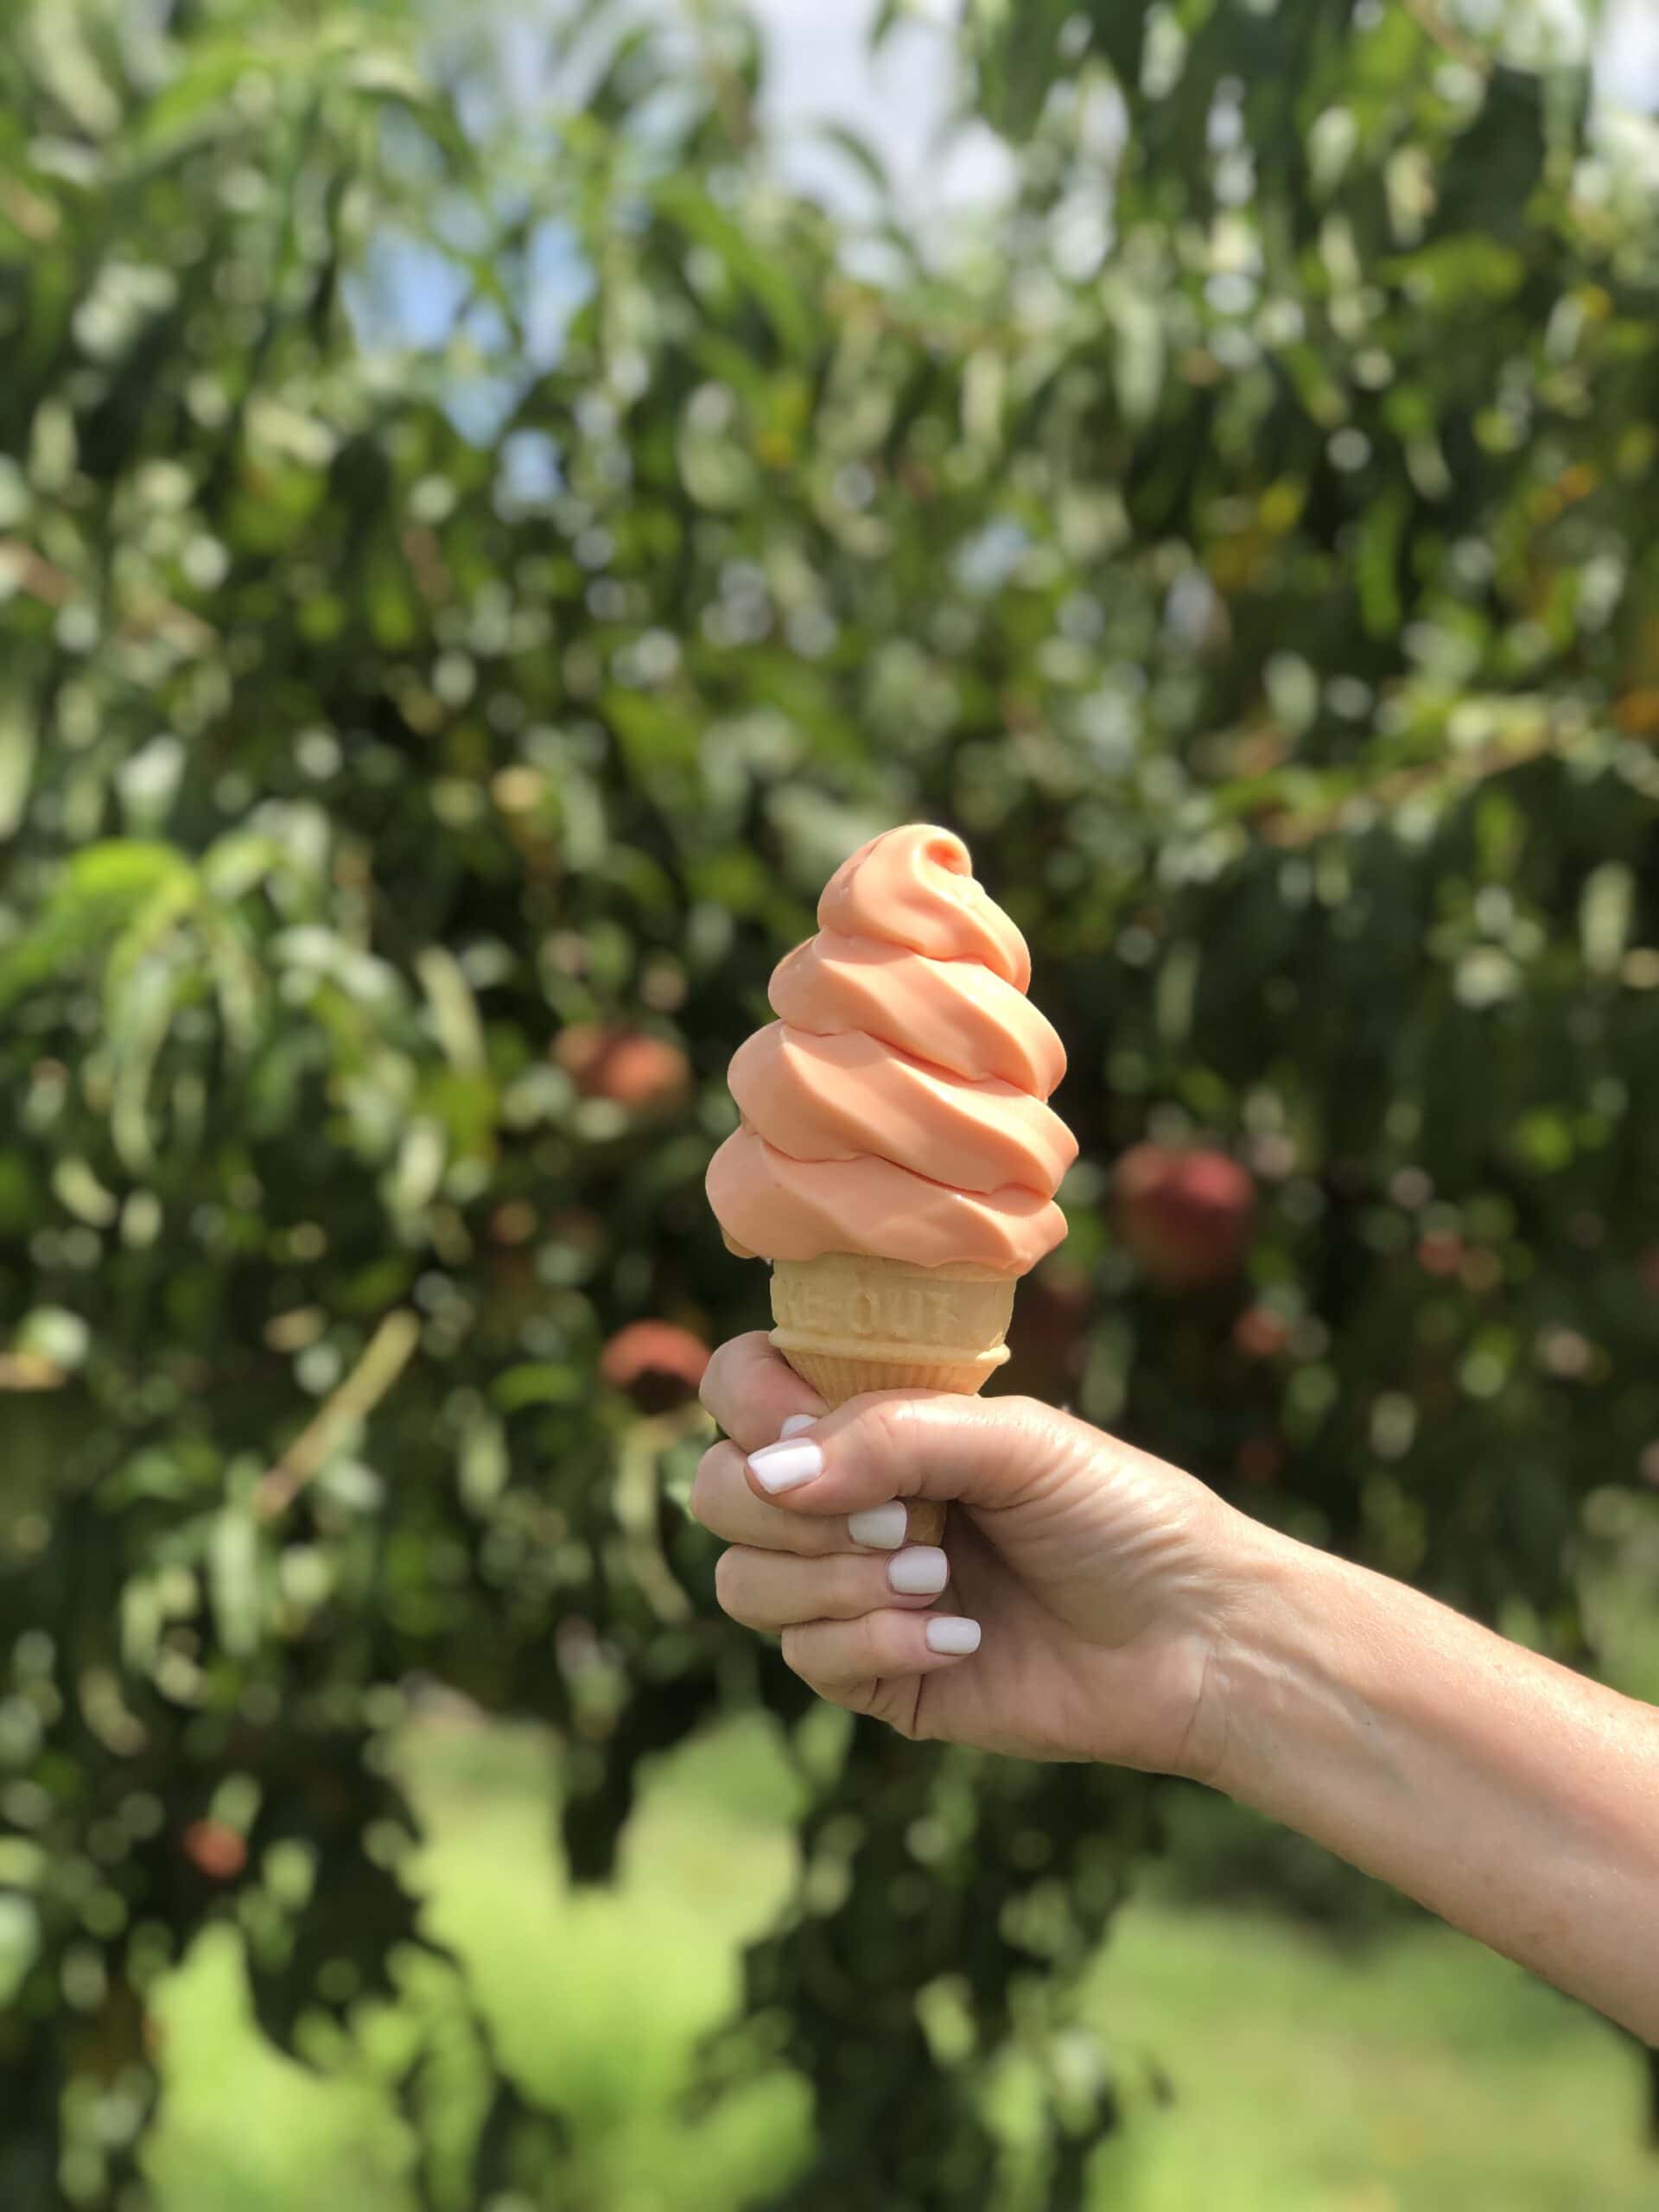 soft serve peach ice cream in cone